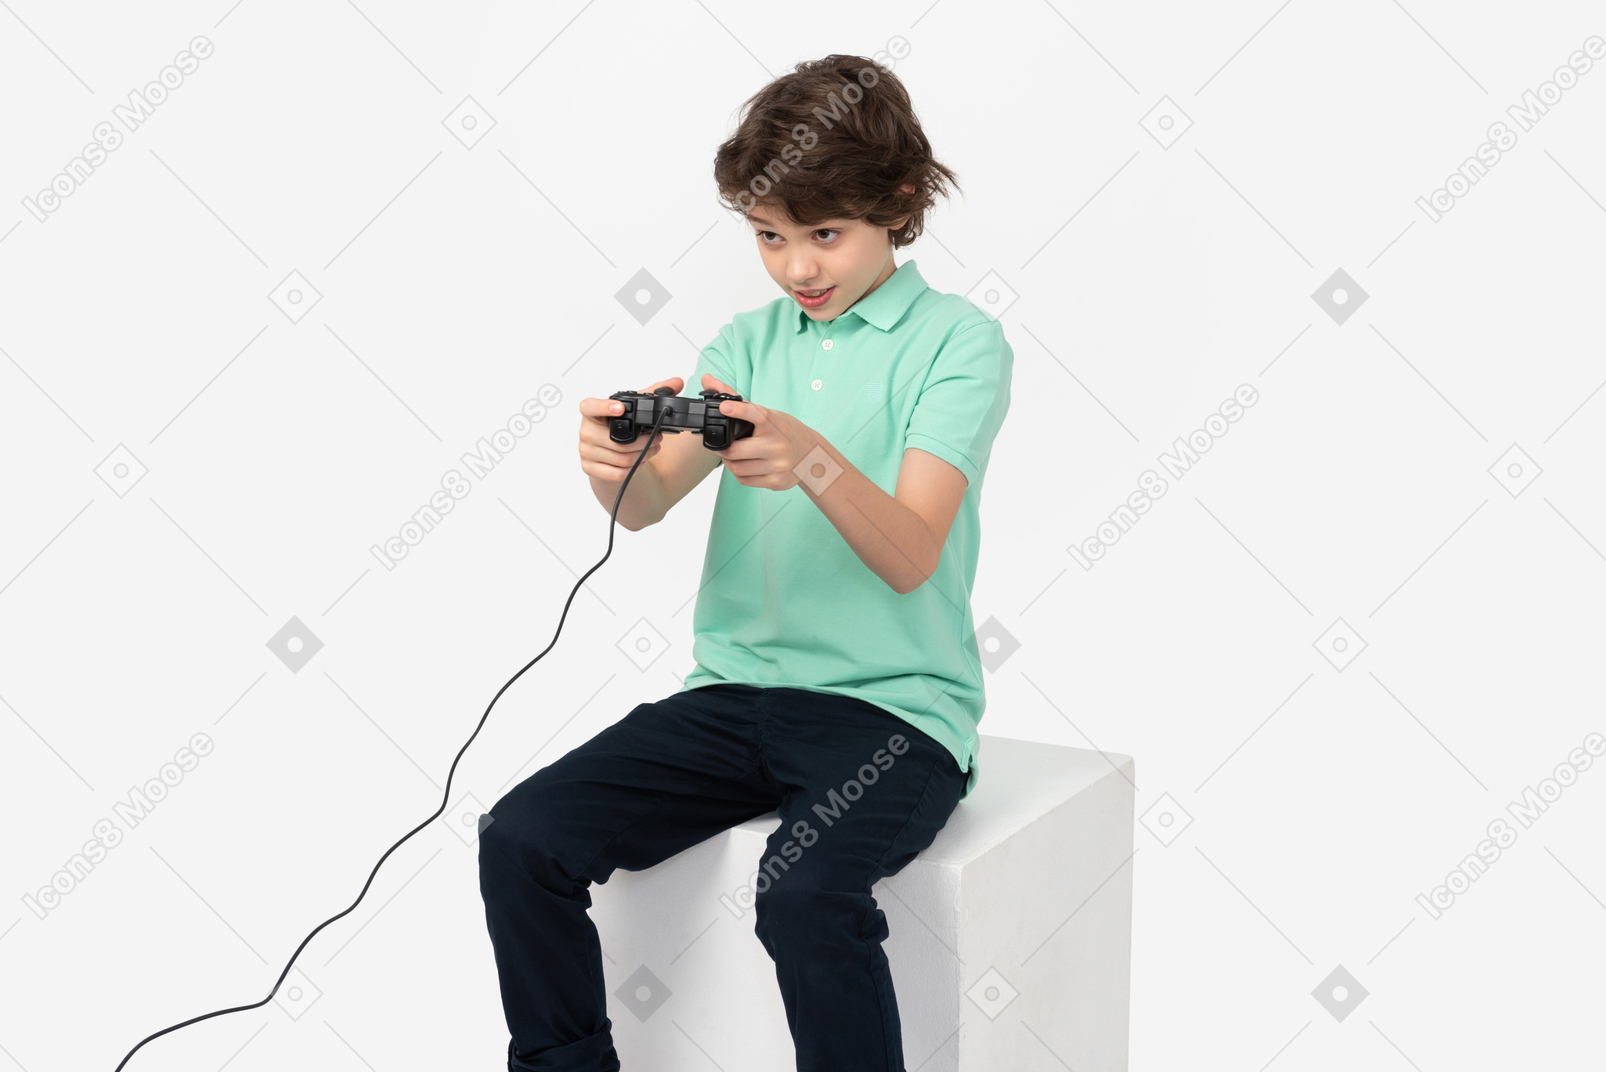 Garçon adolescent concentré jouant à des jeux vidéo